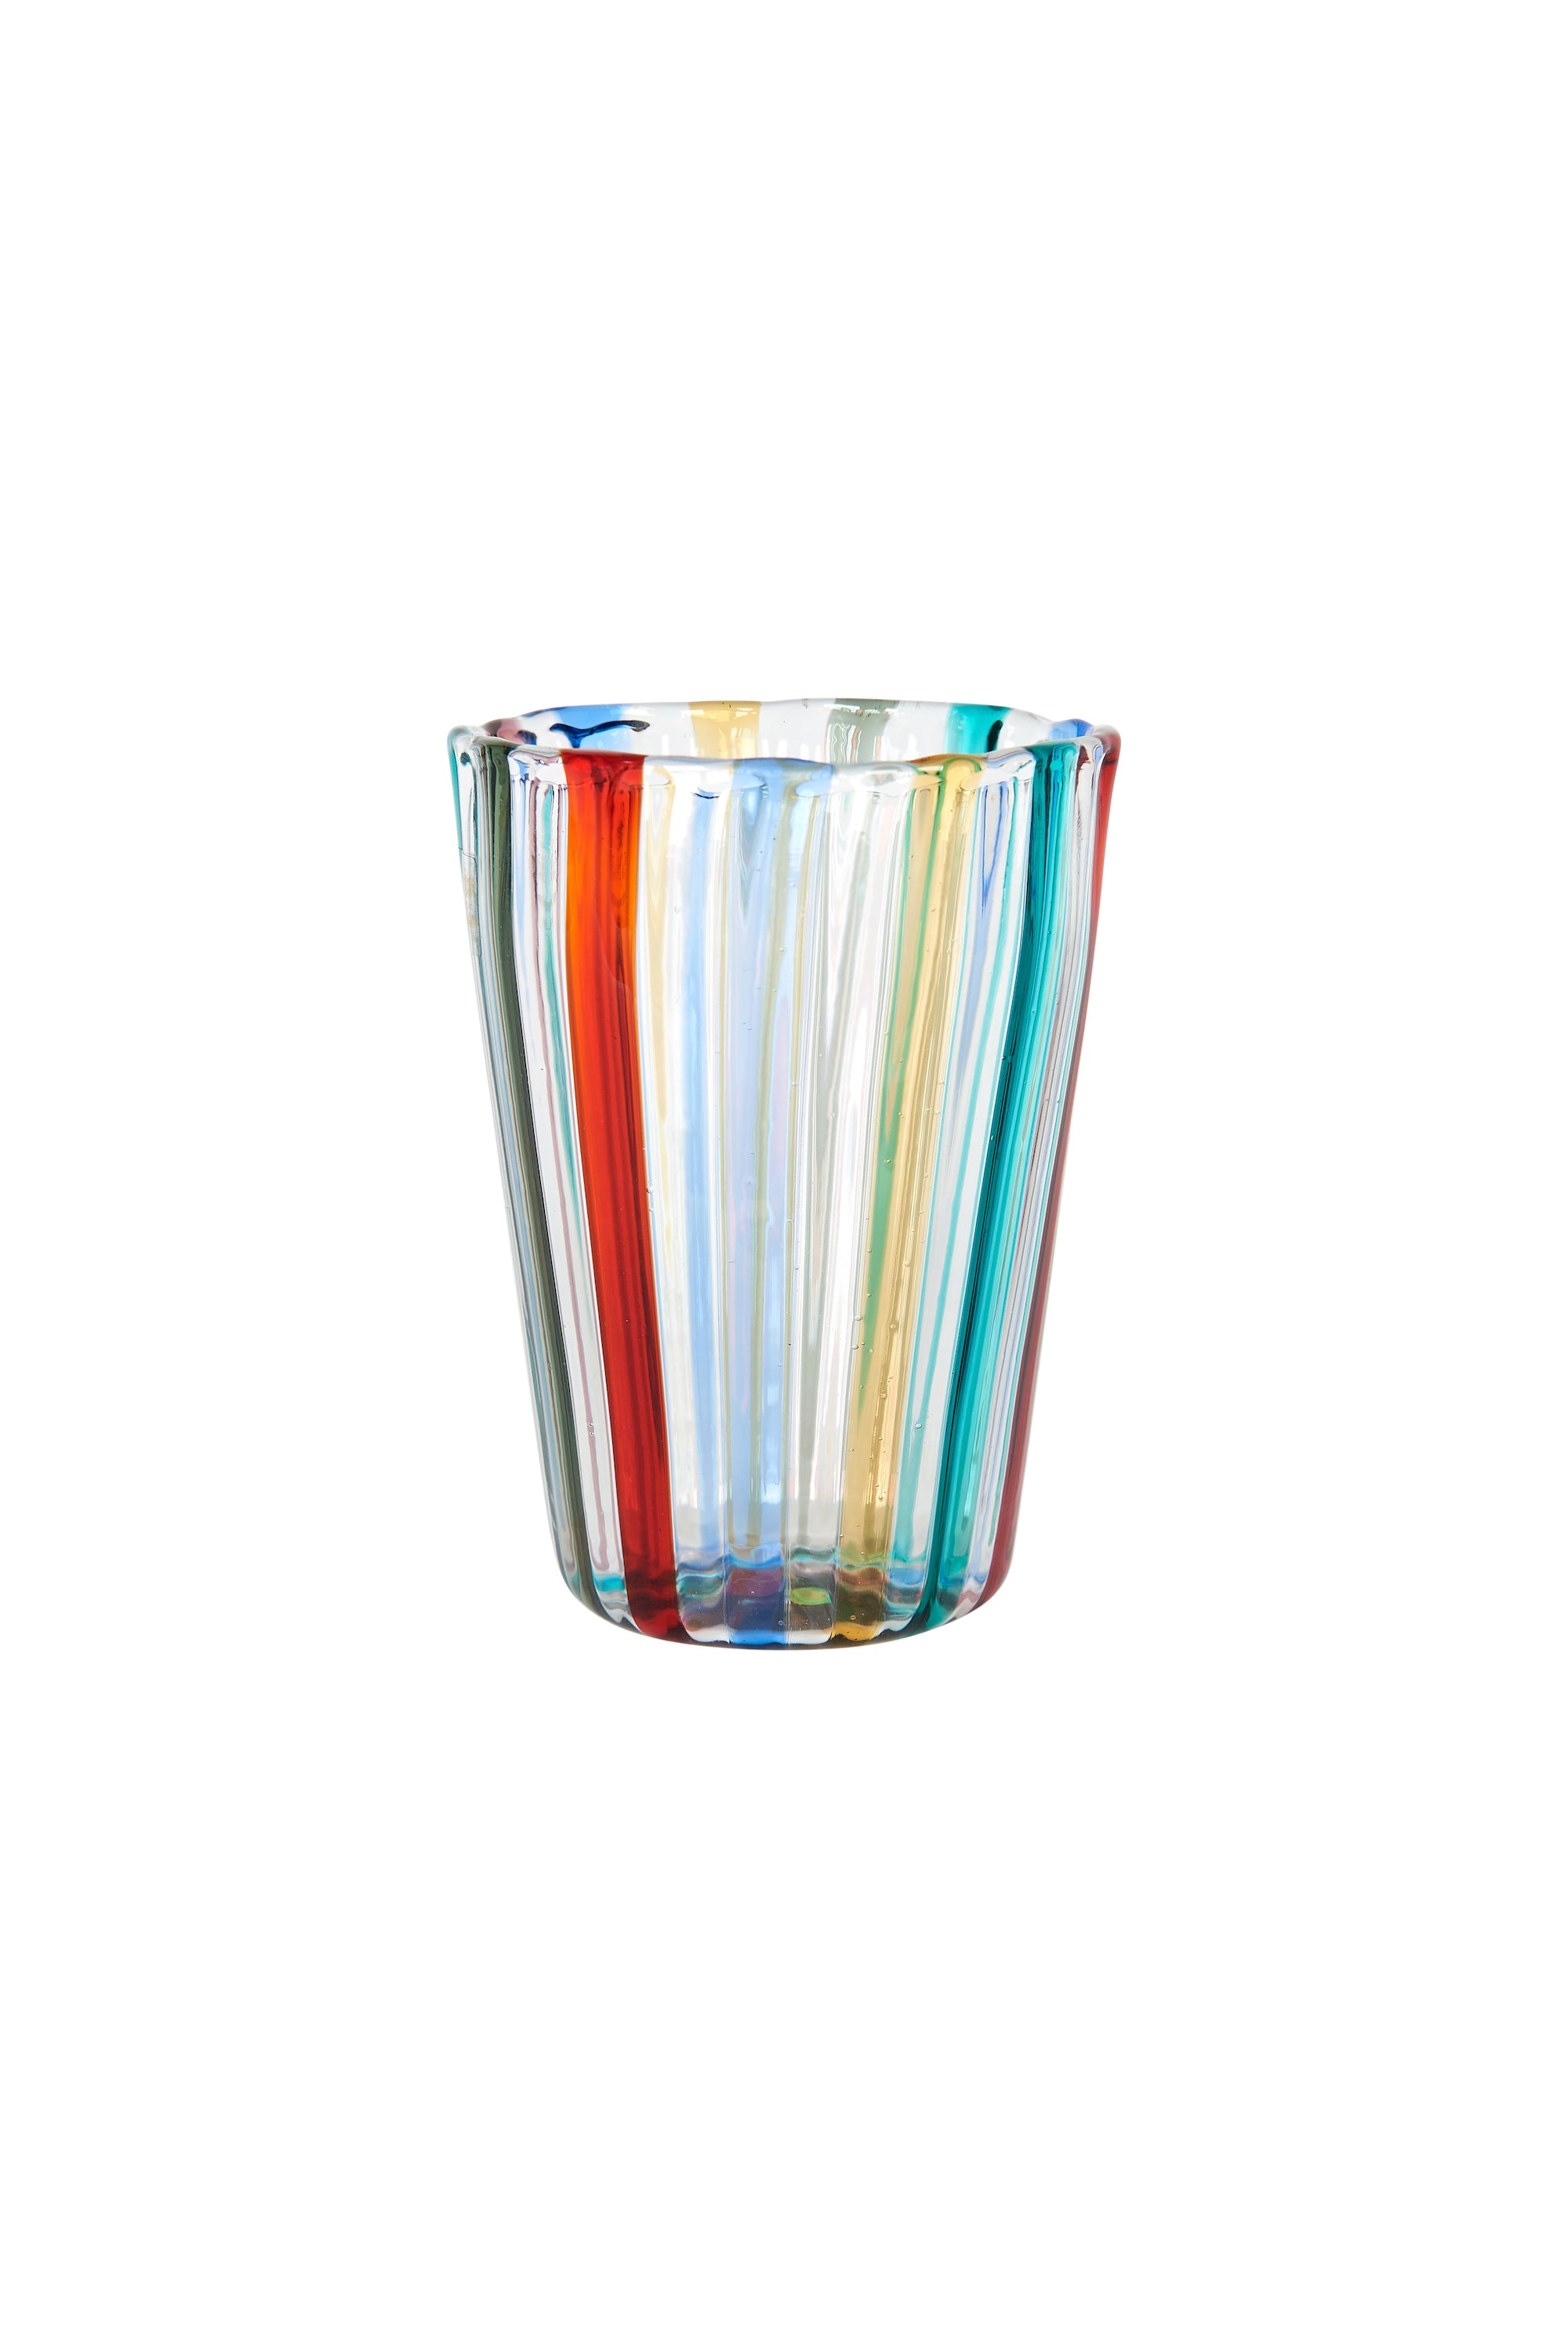 Multi-Coloured Handblown Murano Gio Ponti ‘A Canne’ Style Italian Glass